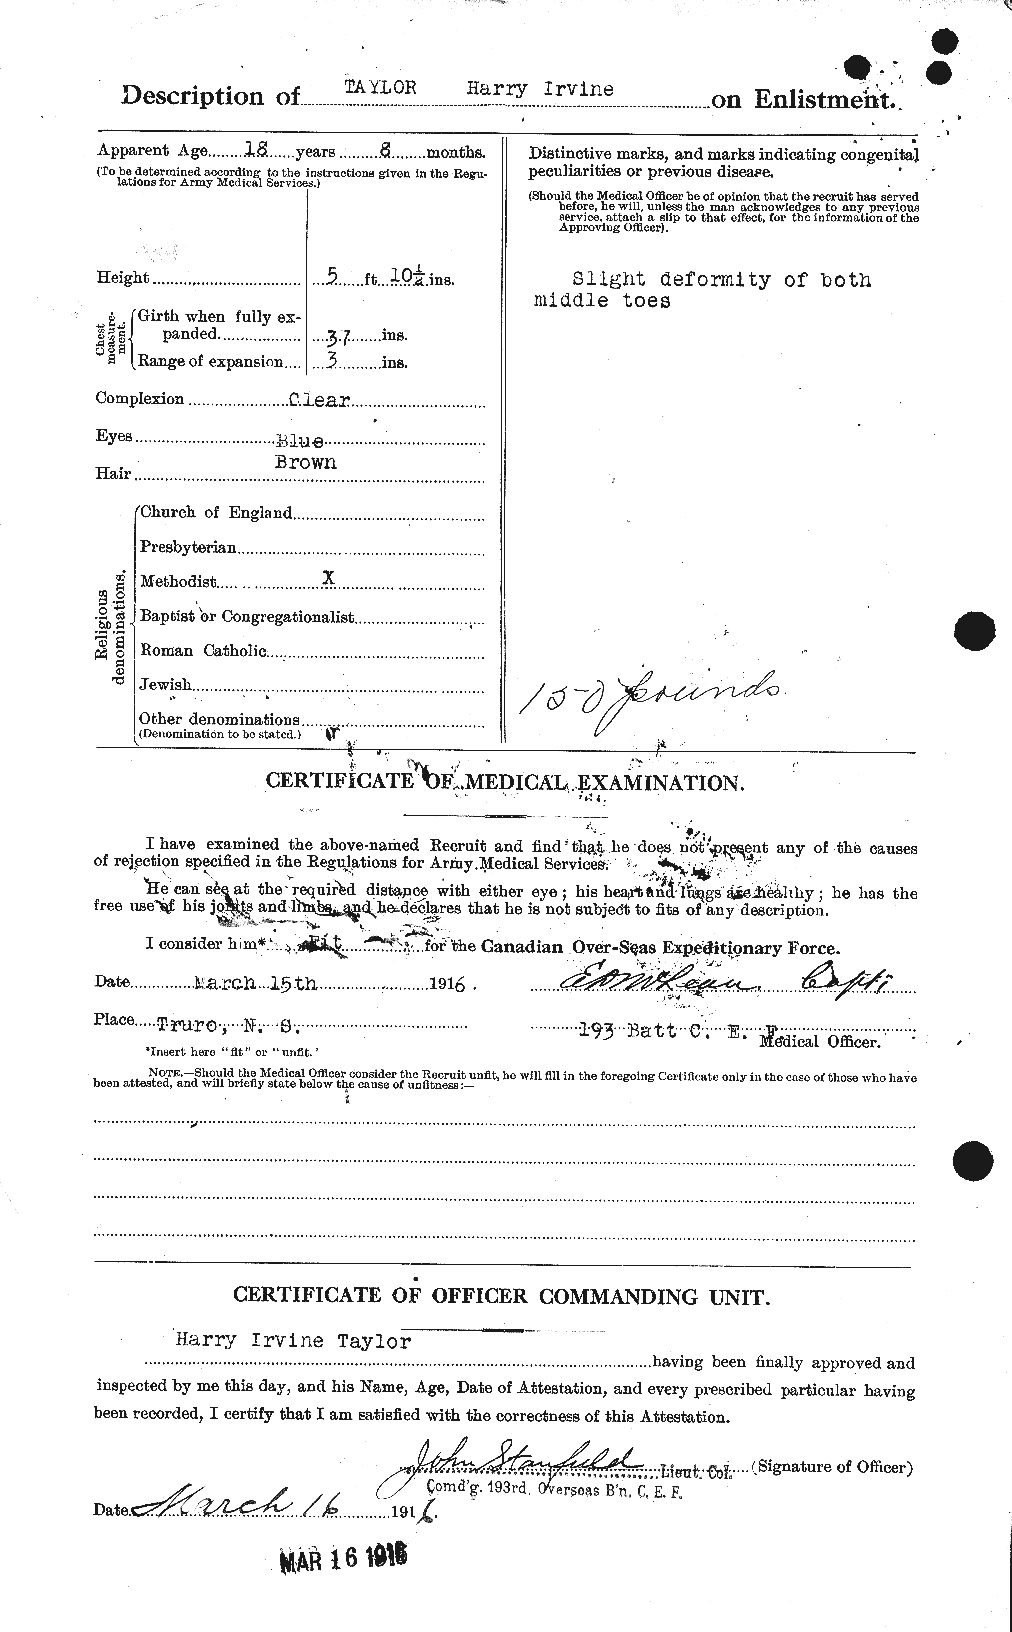 Dossiers du Personnel de la Première Guerre mondiale - CEC 626497b